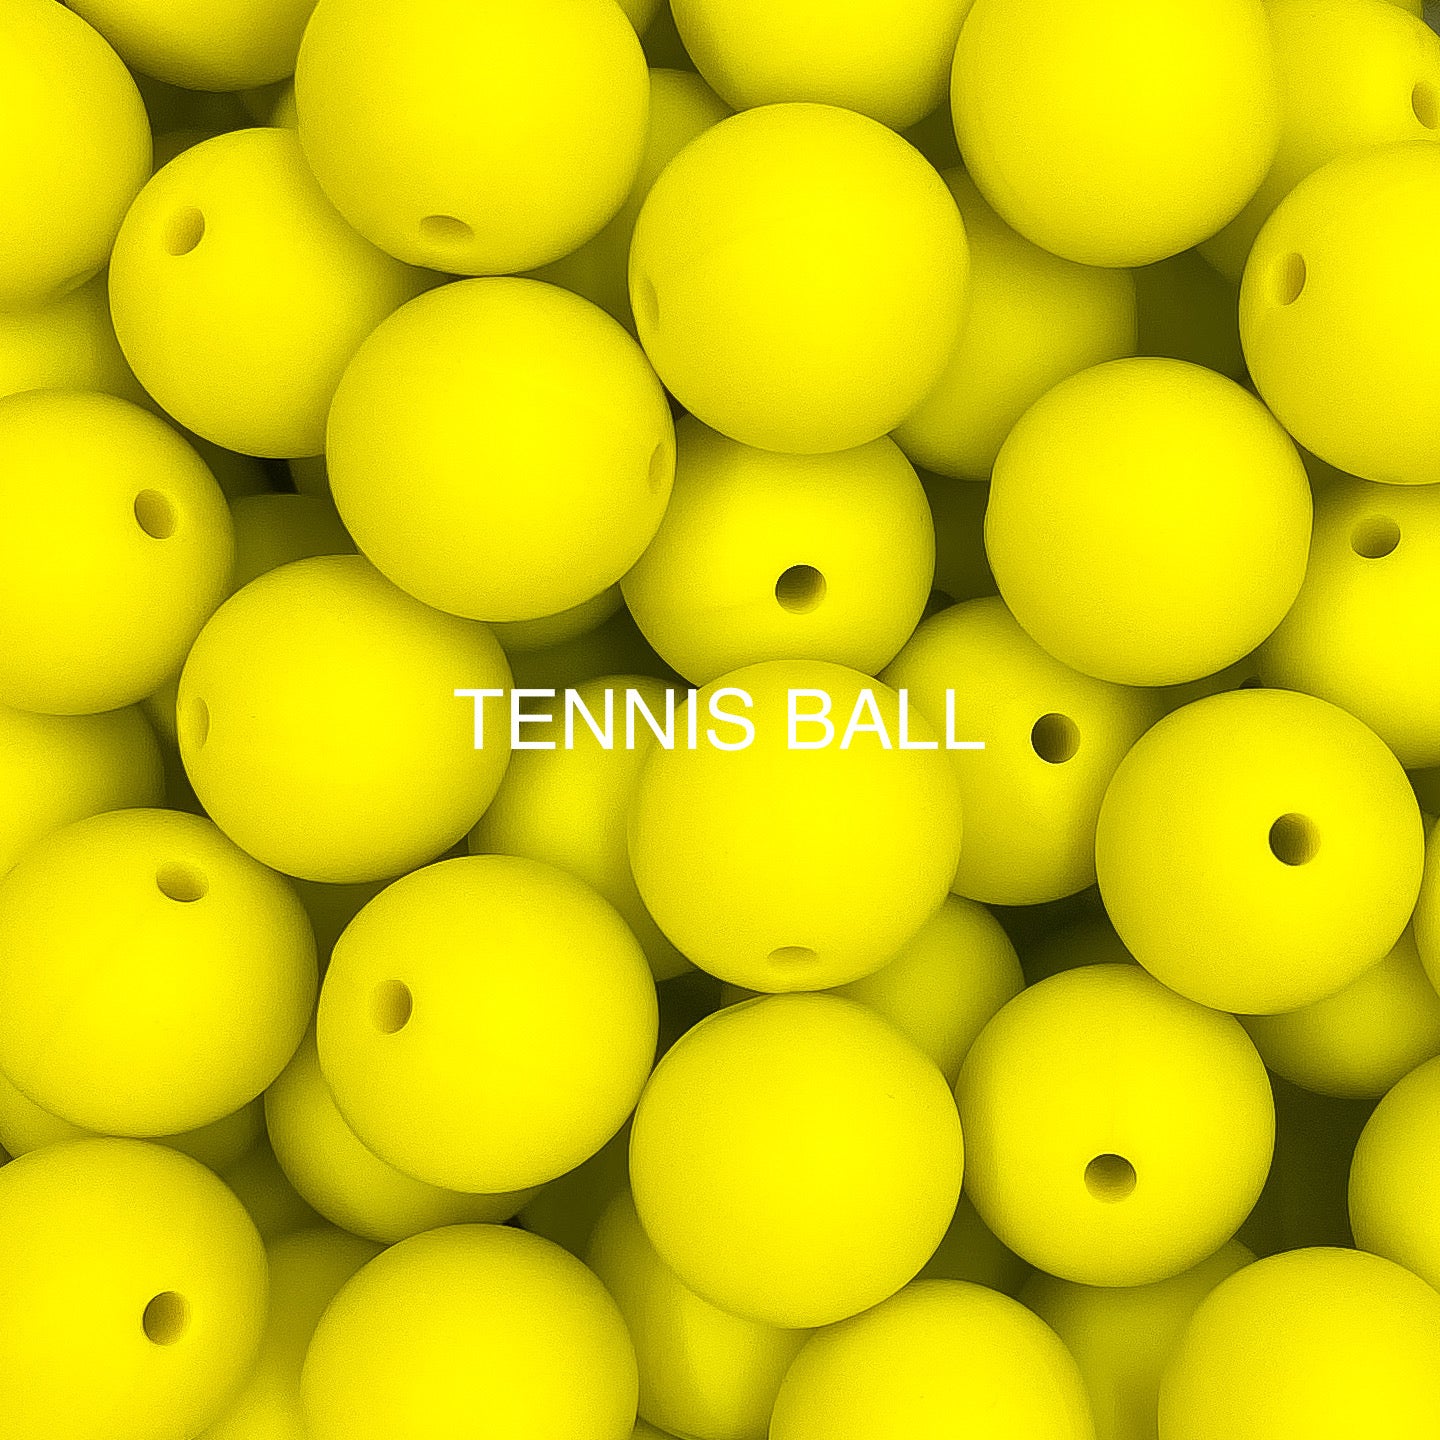 Tennis Ball Yellow 12mm Round Silicone Beads, Yellow Round